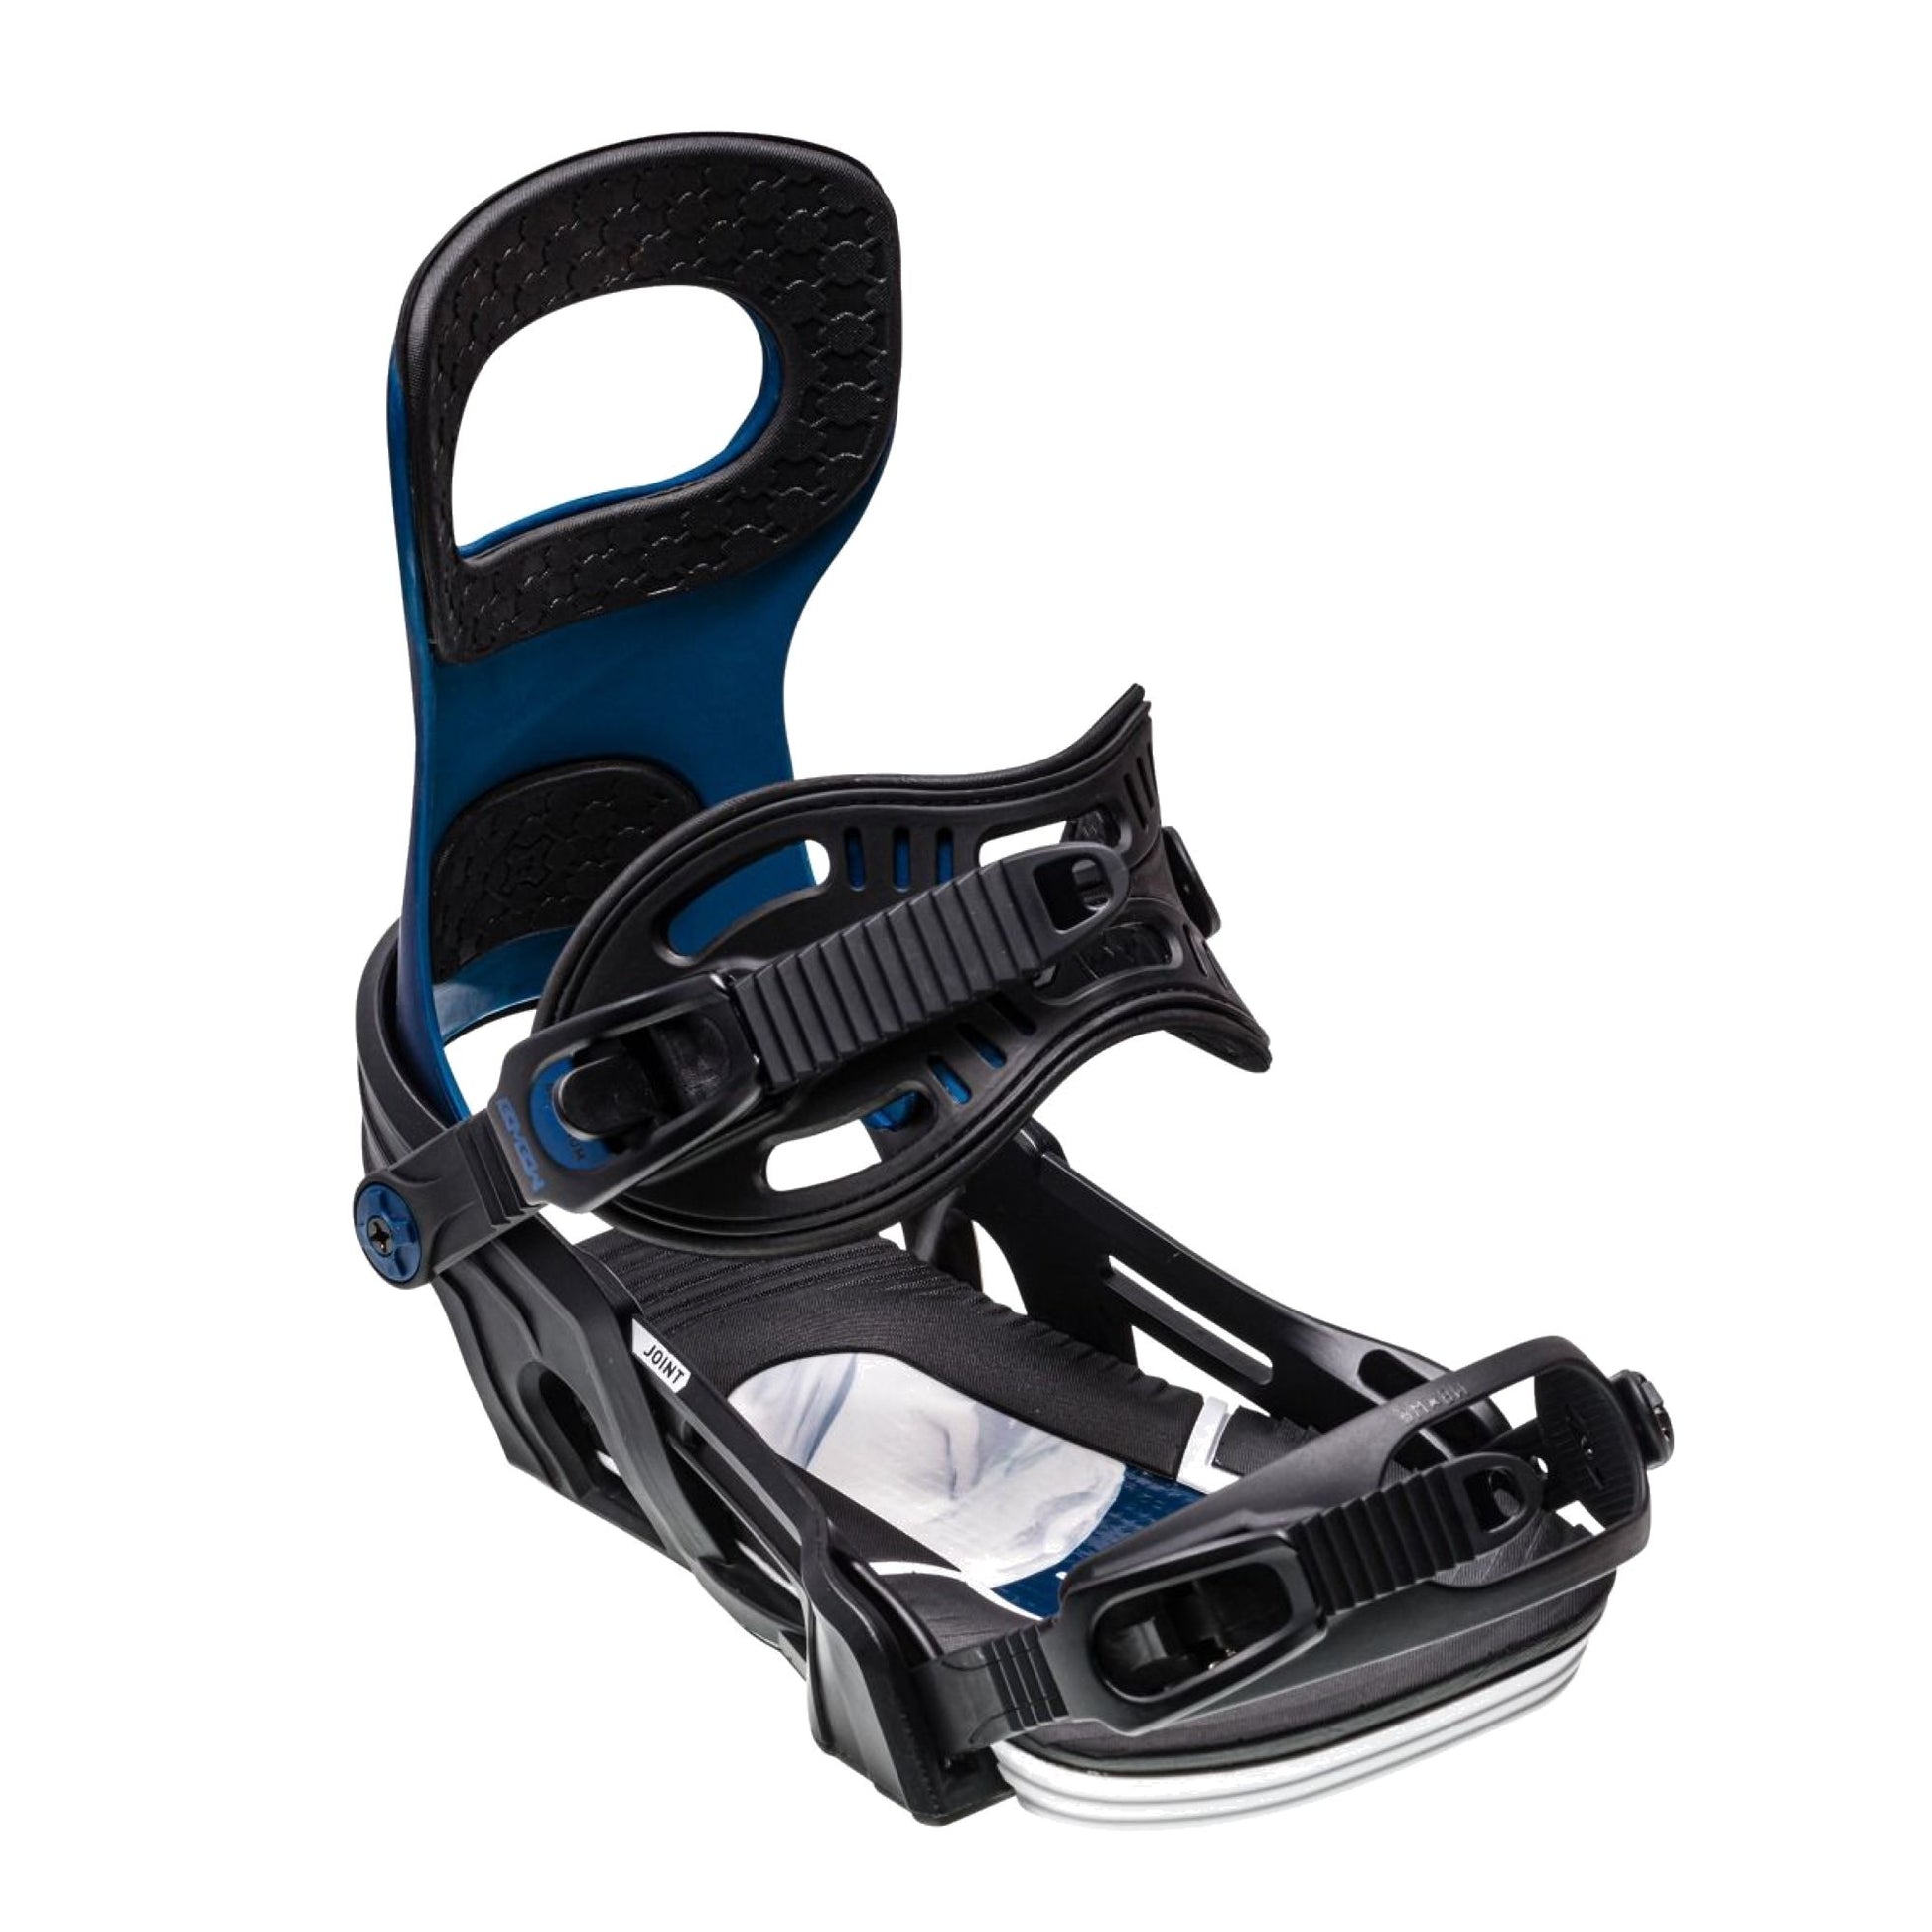 Bent Metal Joint Snowboard Bindings Blue Black Snowboard Bindings